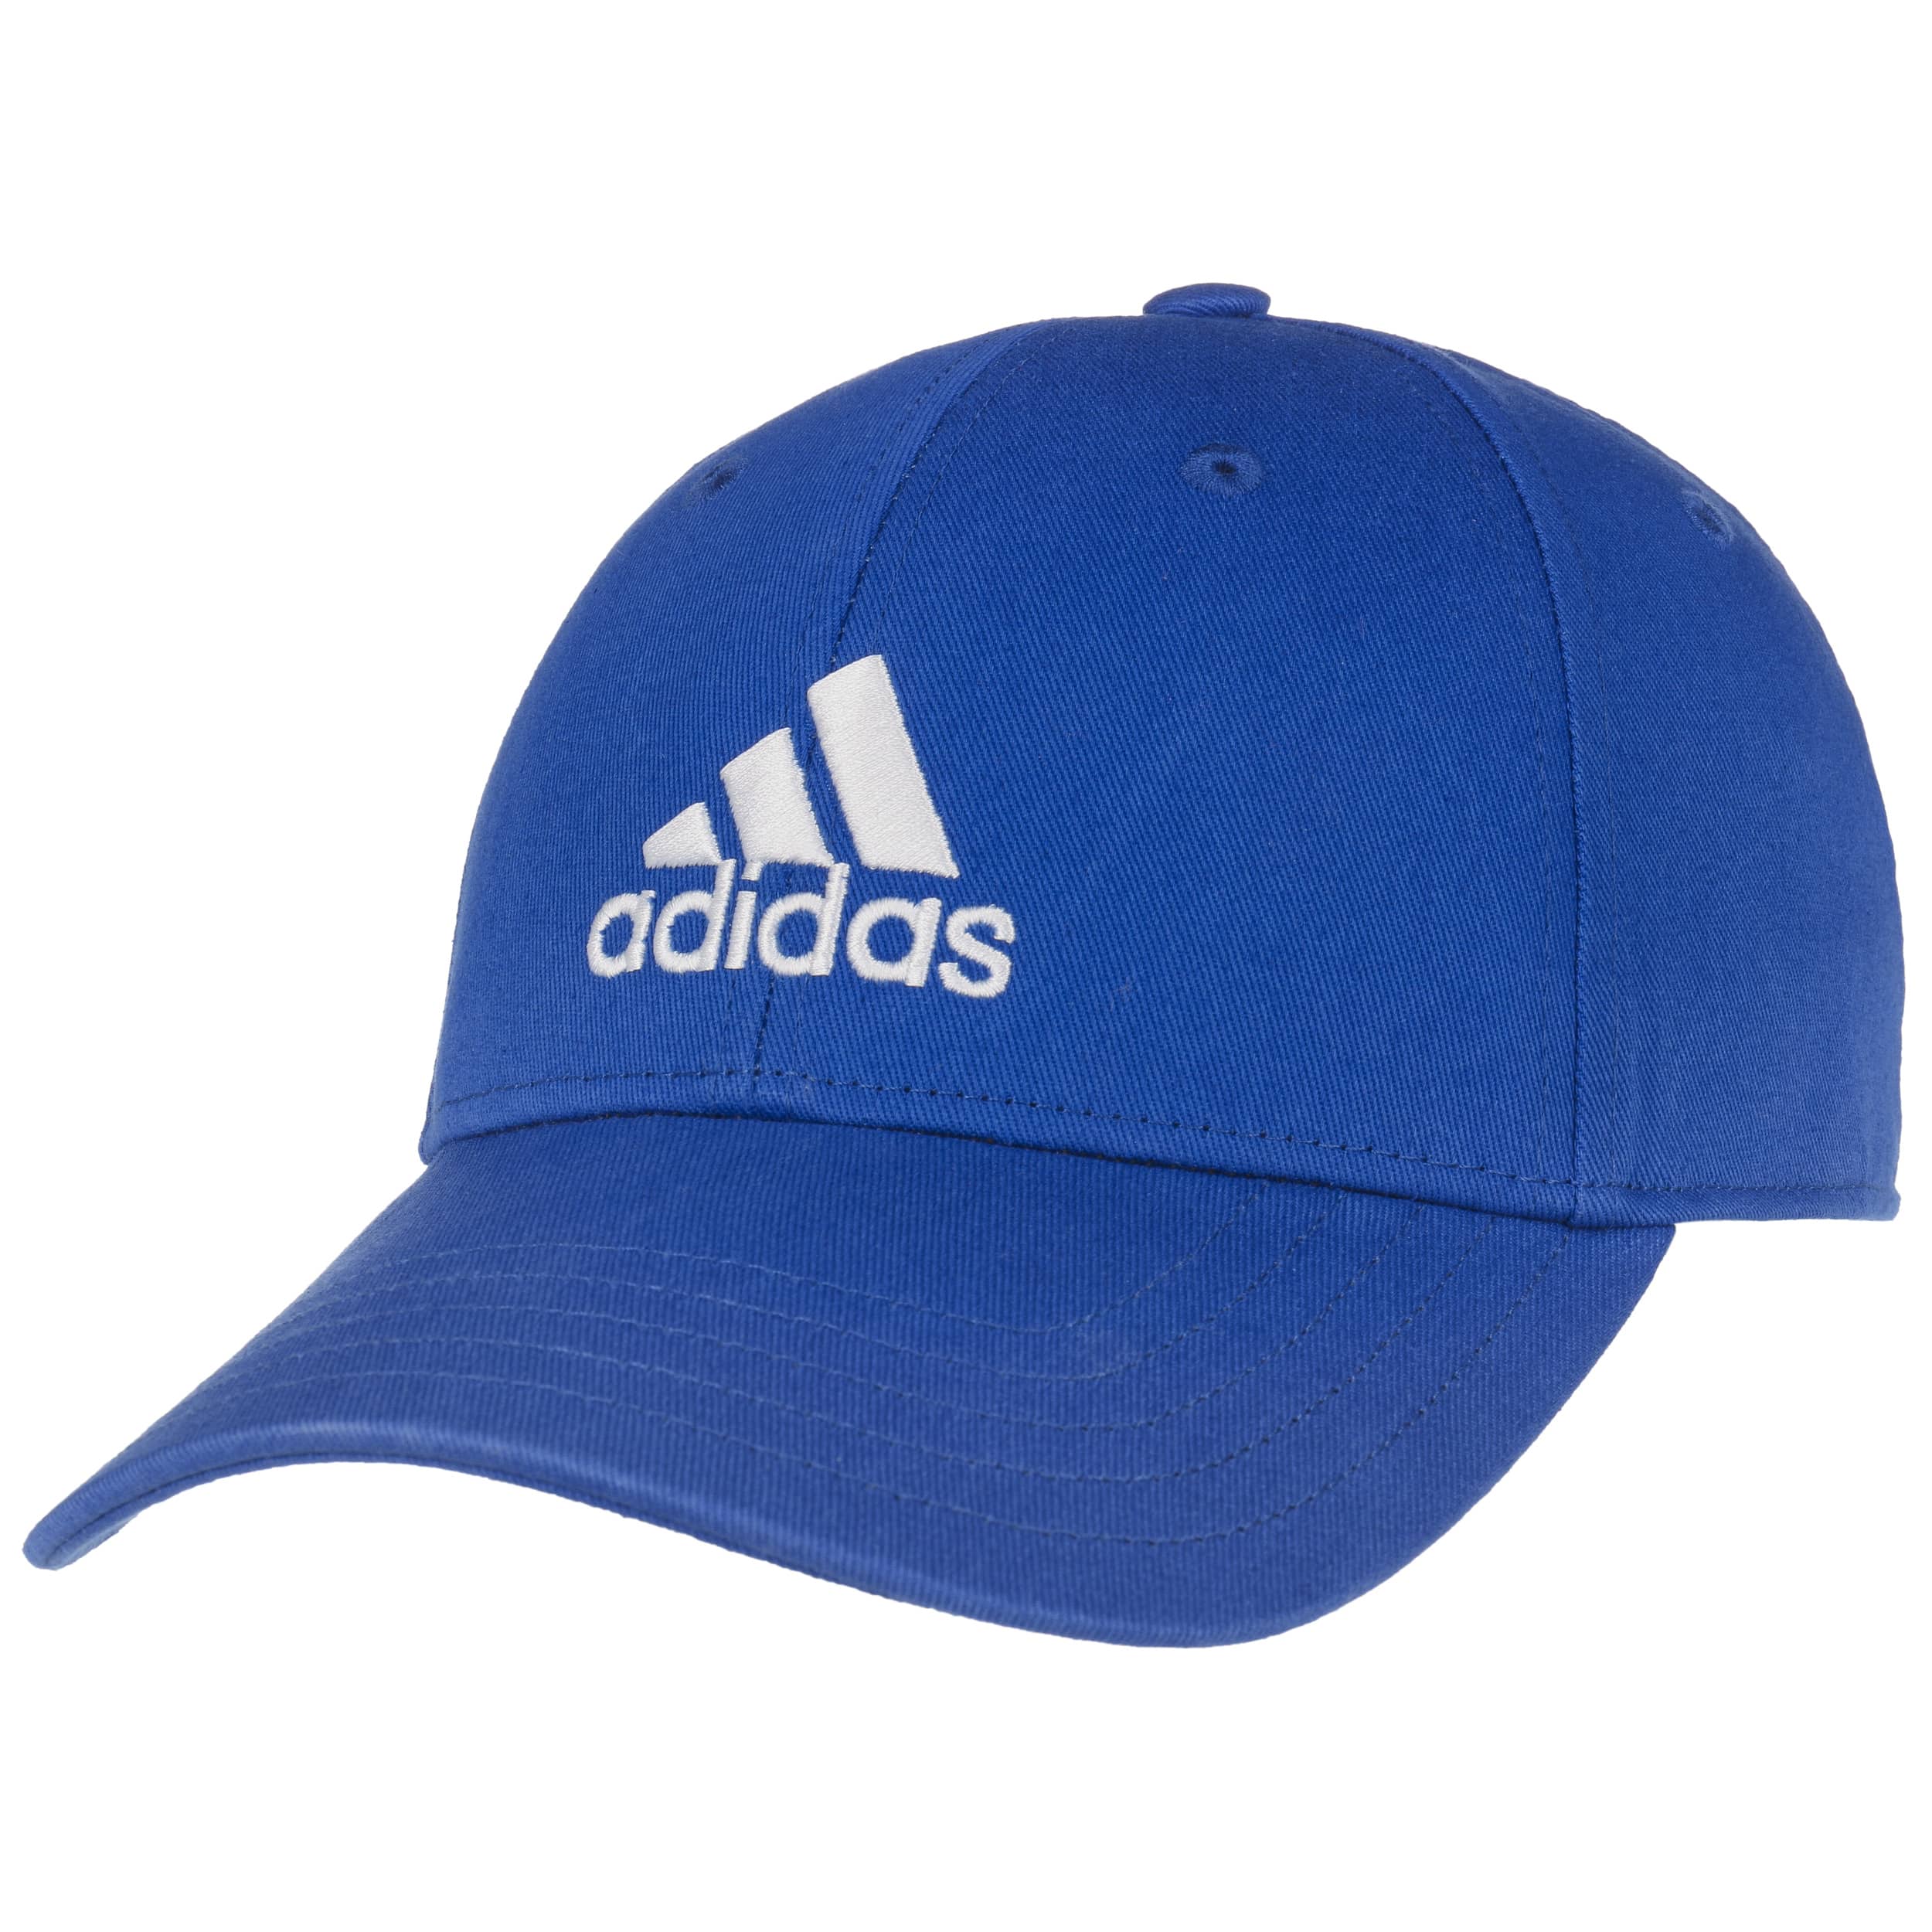 blue peaked cap